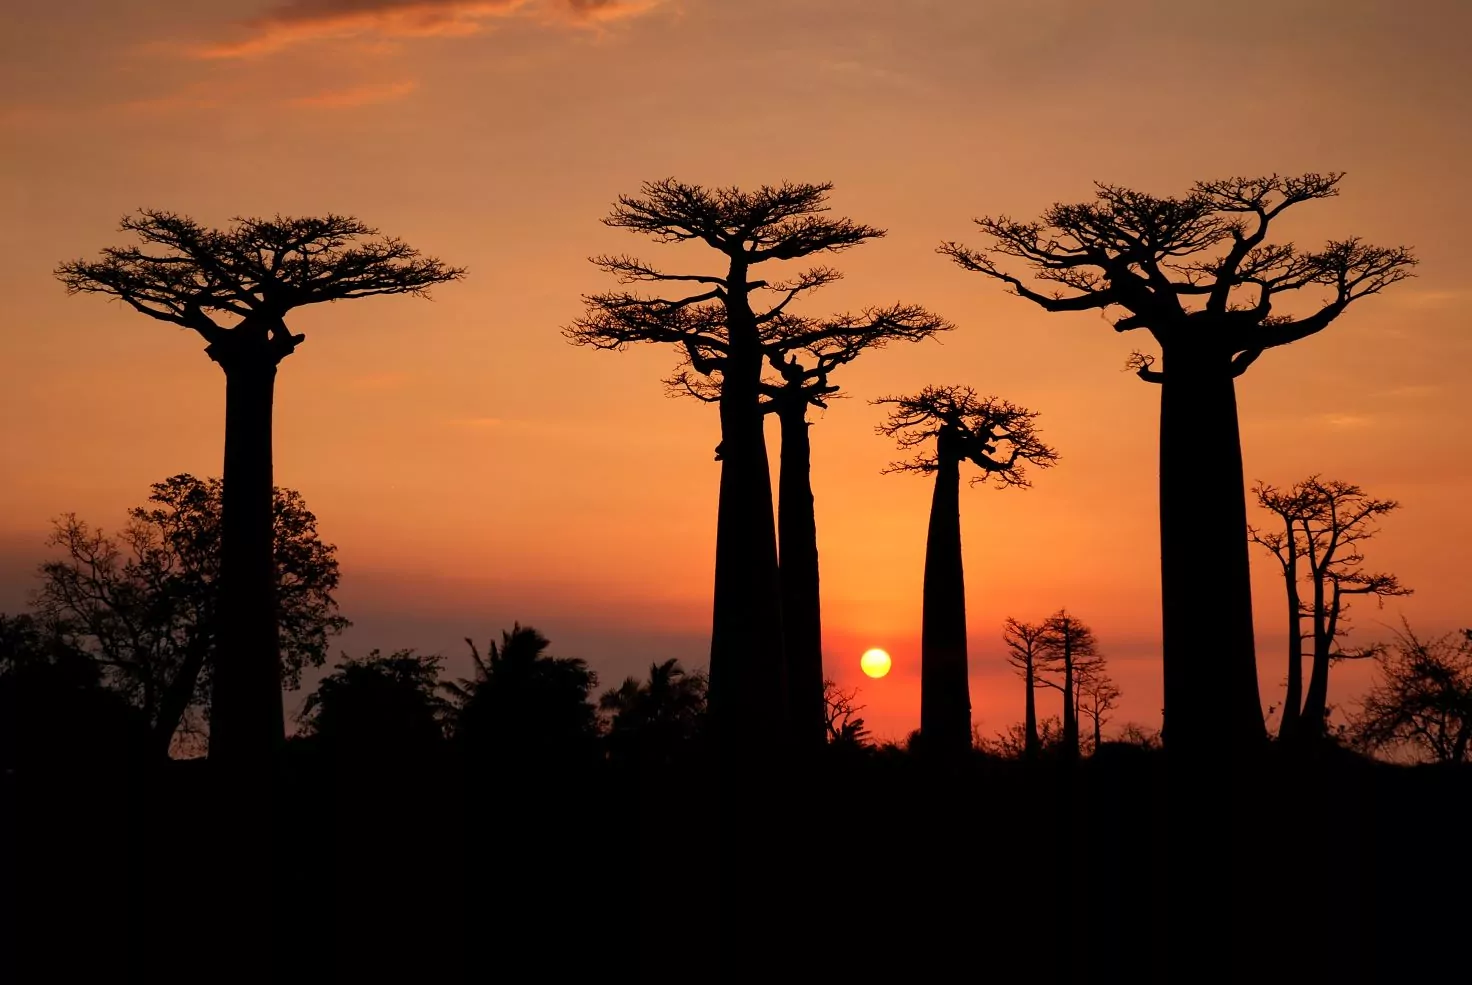 שדרת עצי הבאובב במדגסקר